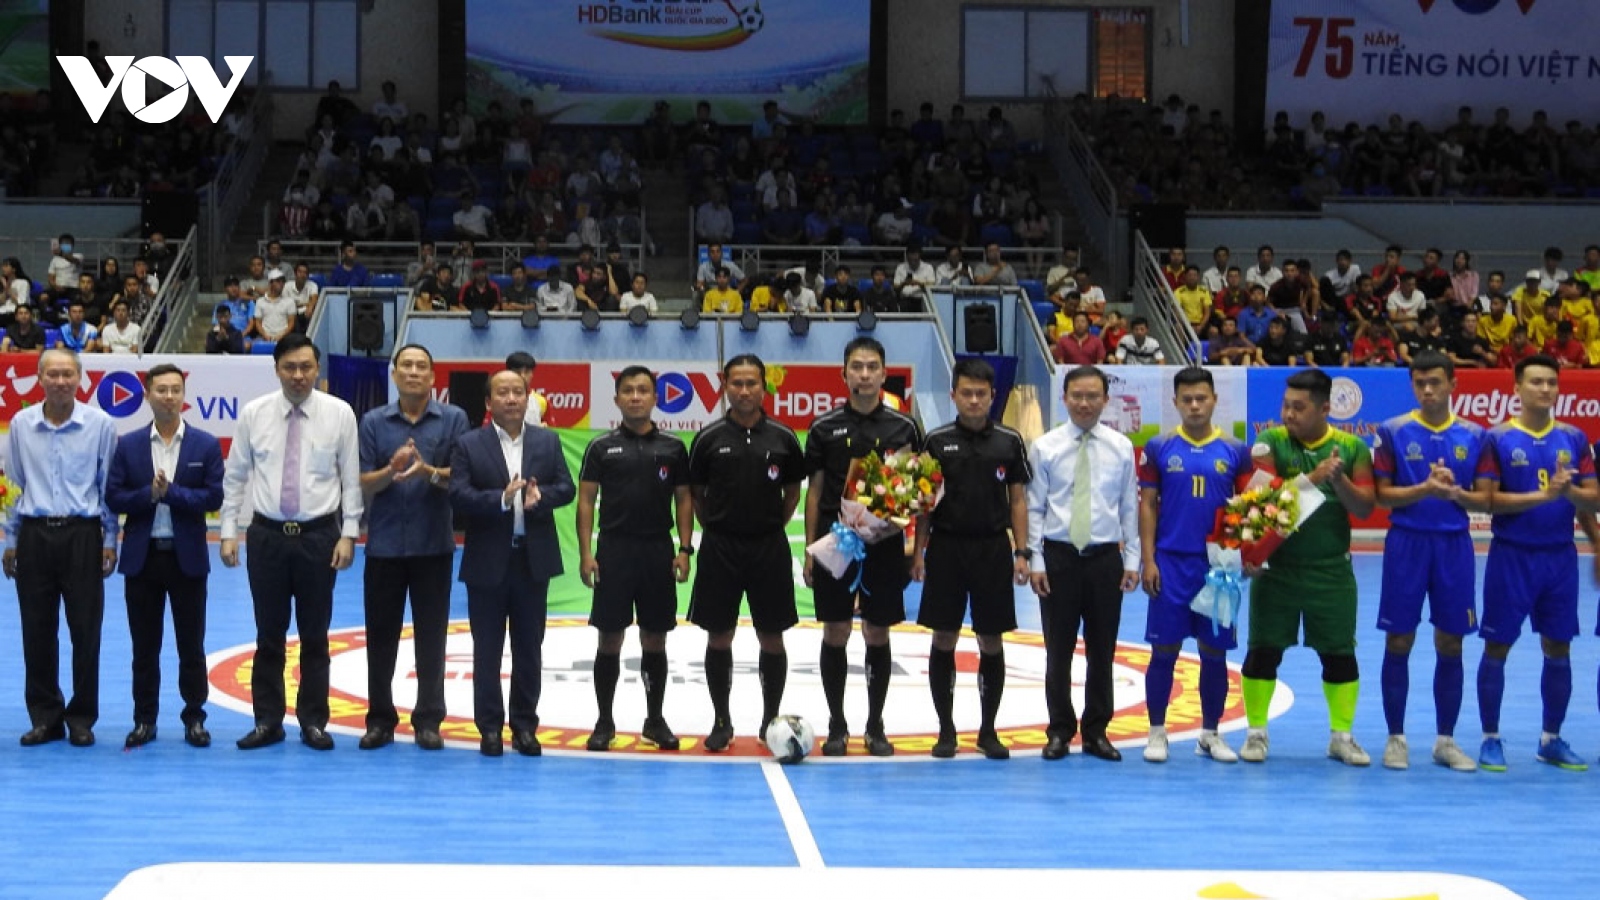 Futsal HDBank National Cup 2020 kicks off